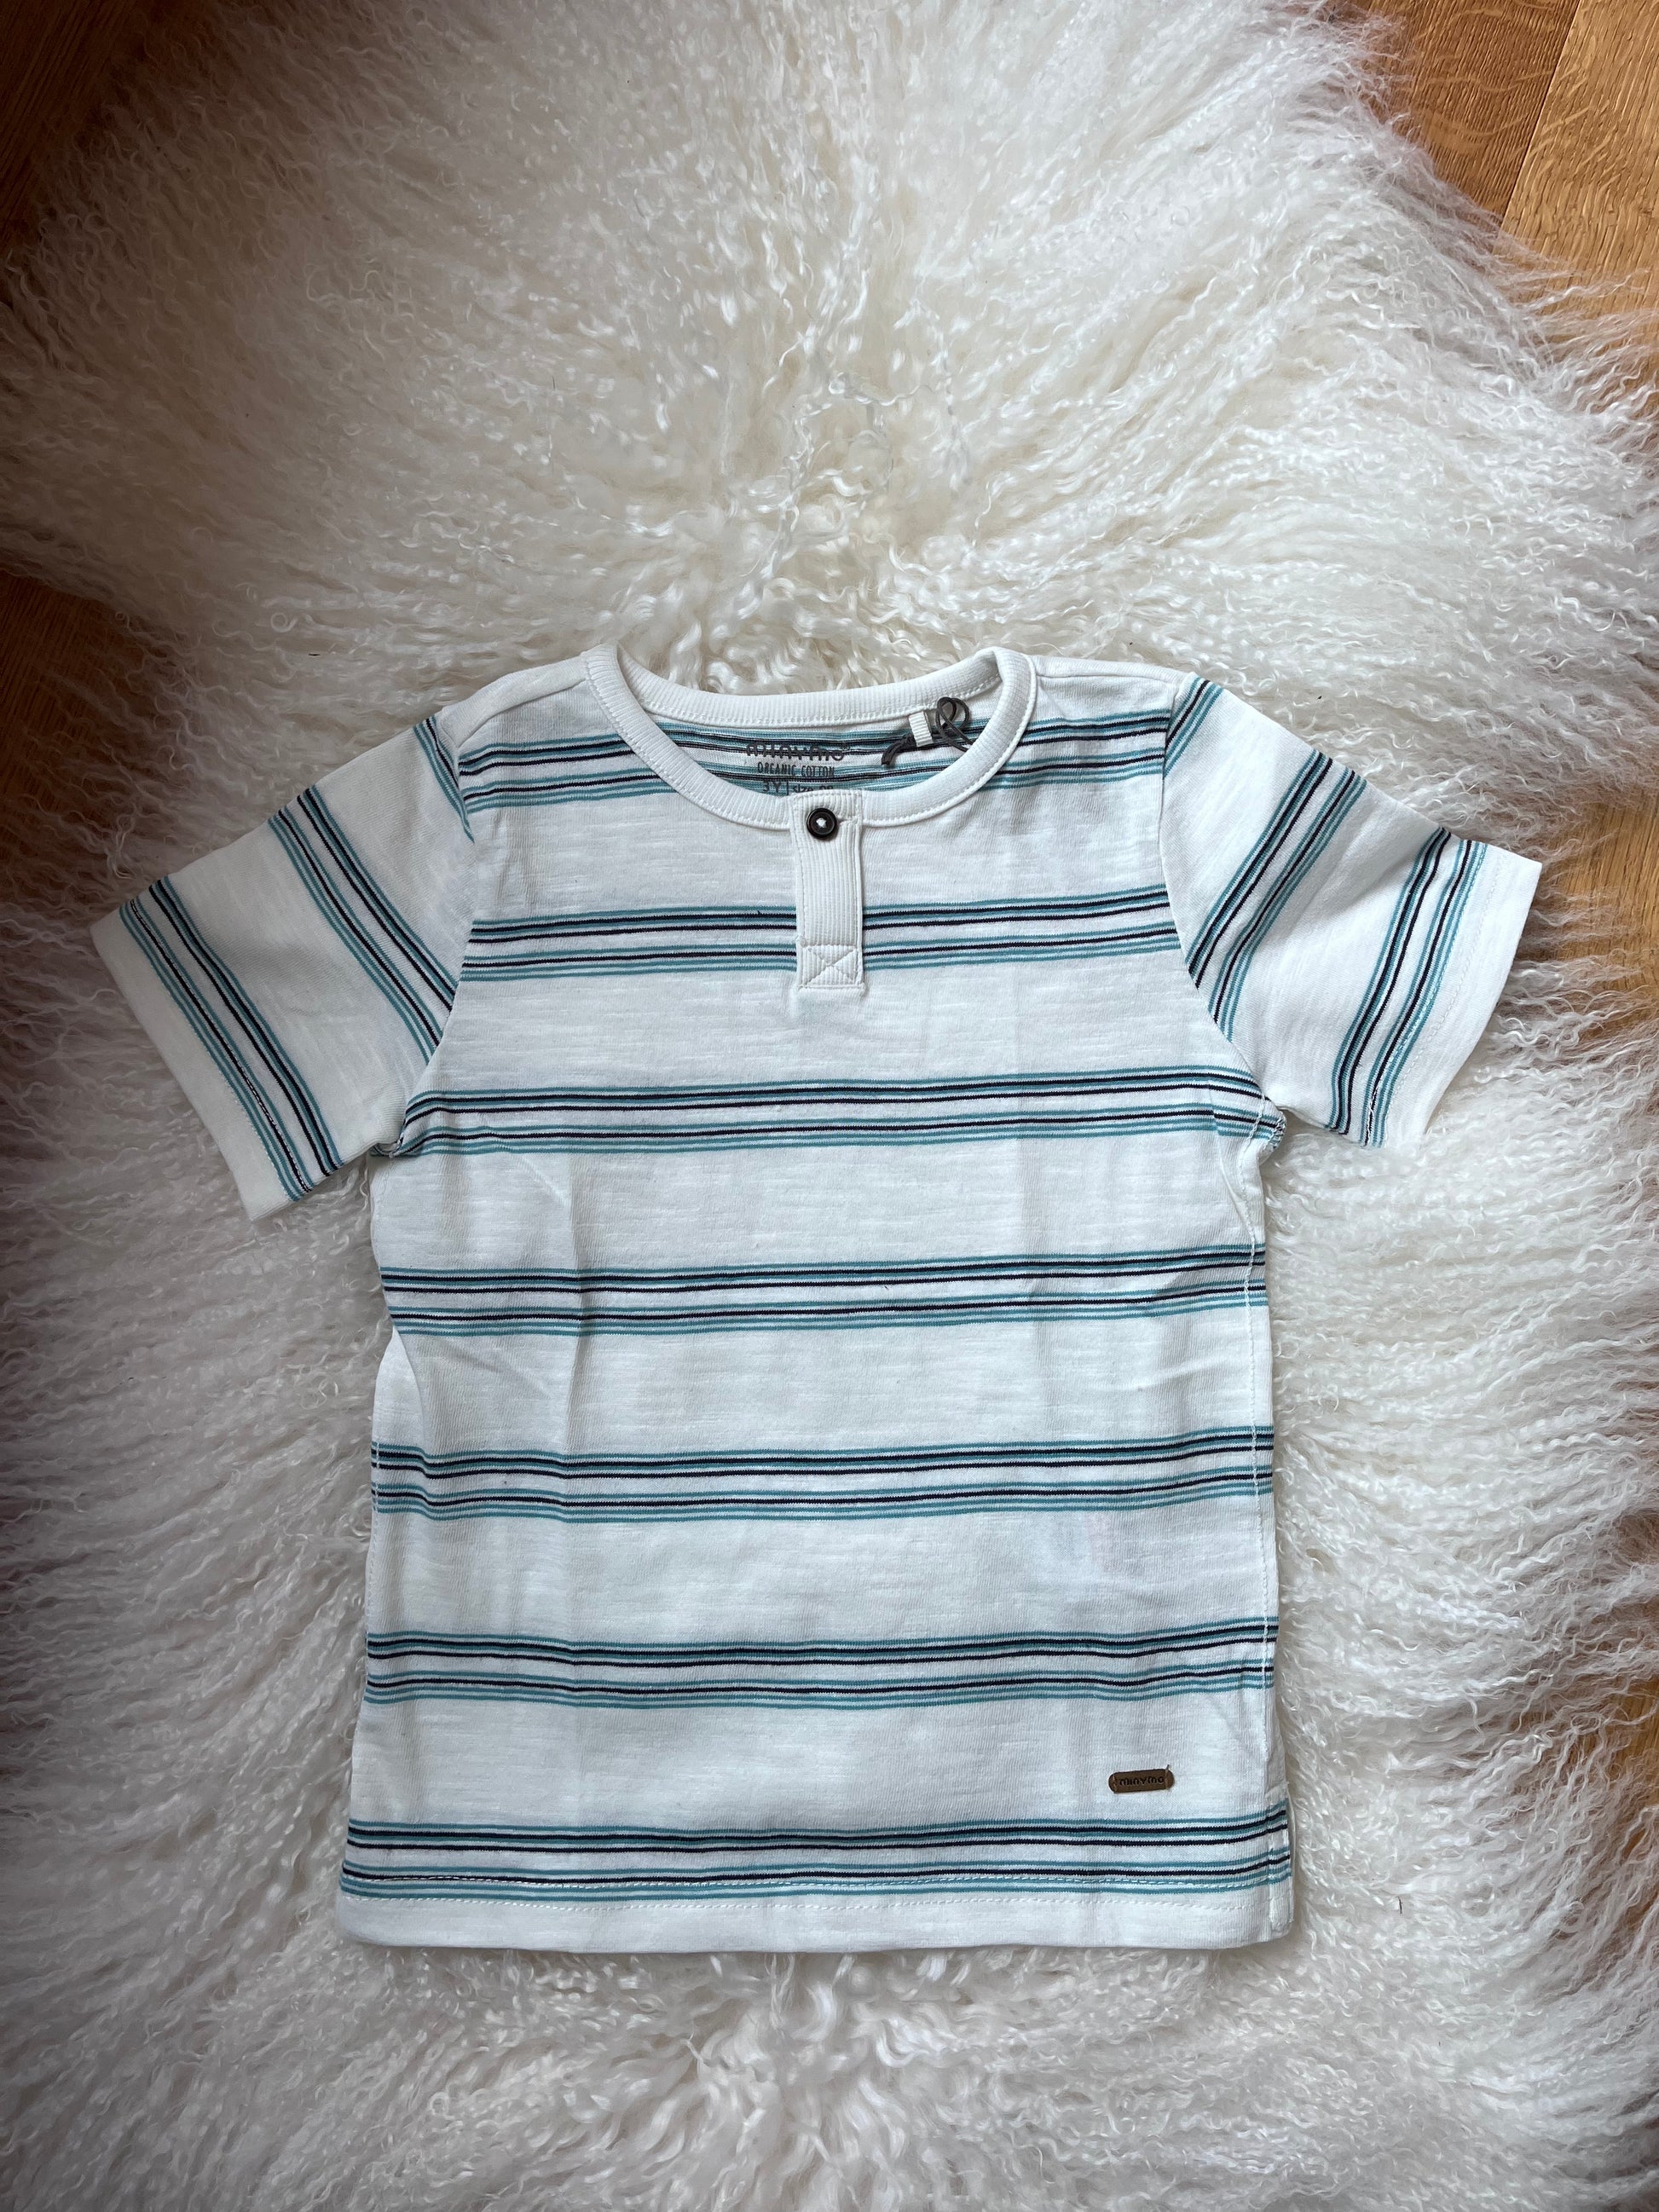 babymode kindermode babykleidung kinderkleidung gestreiftes basicshirt von hust&claire